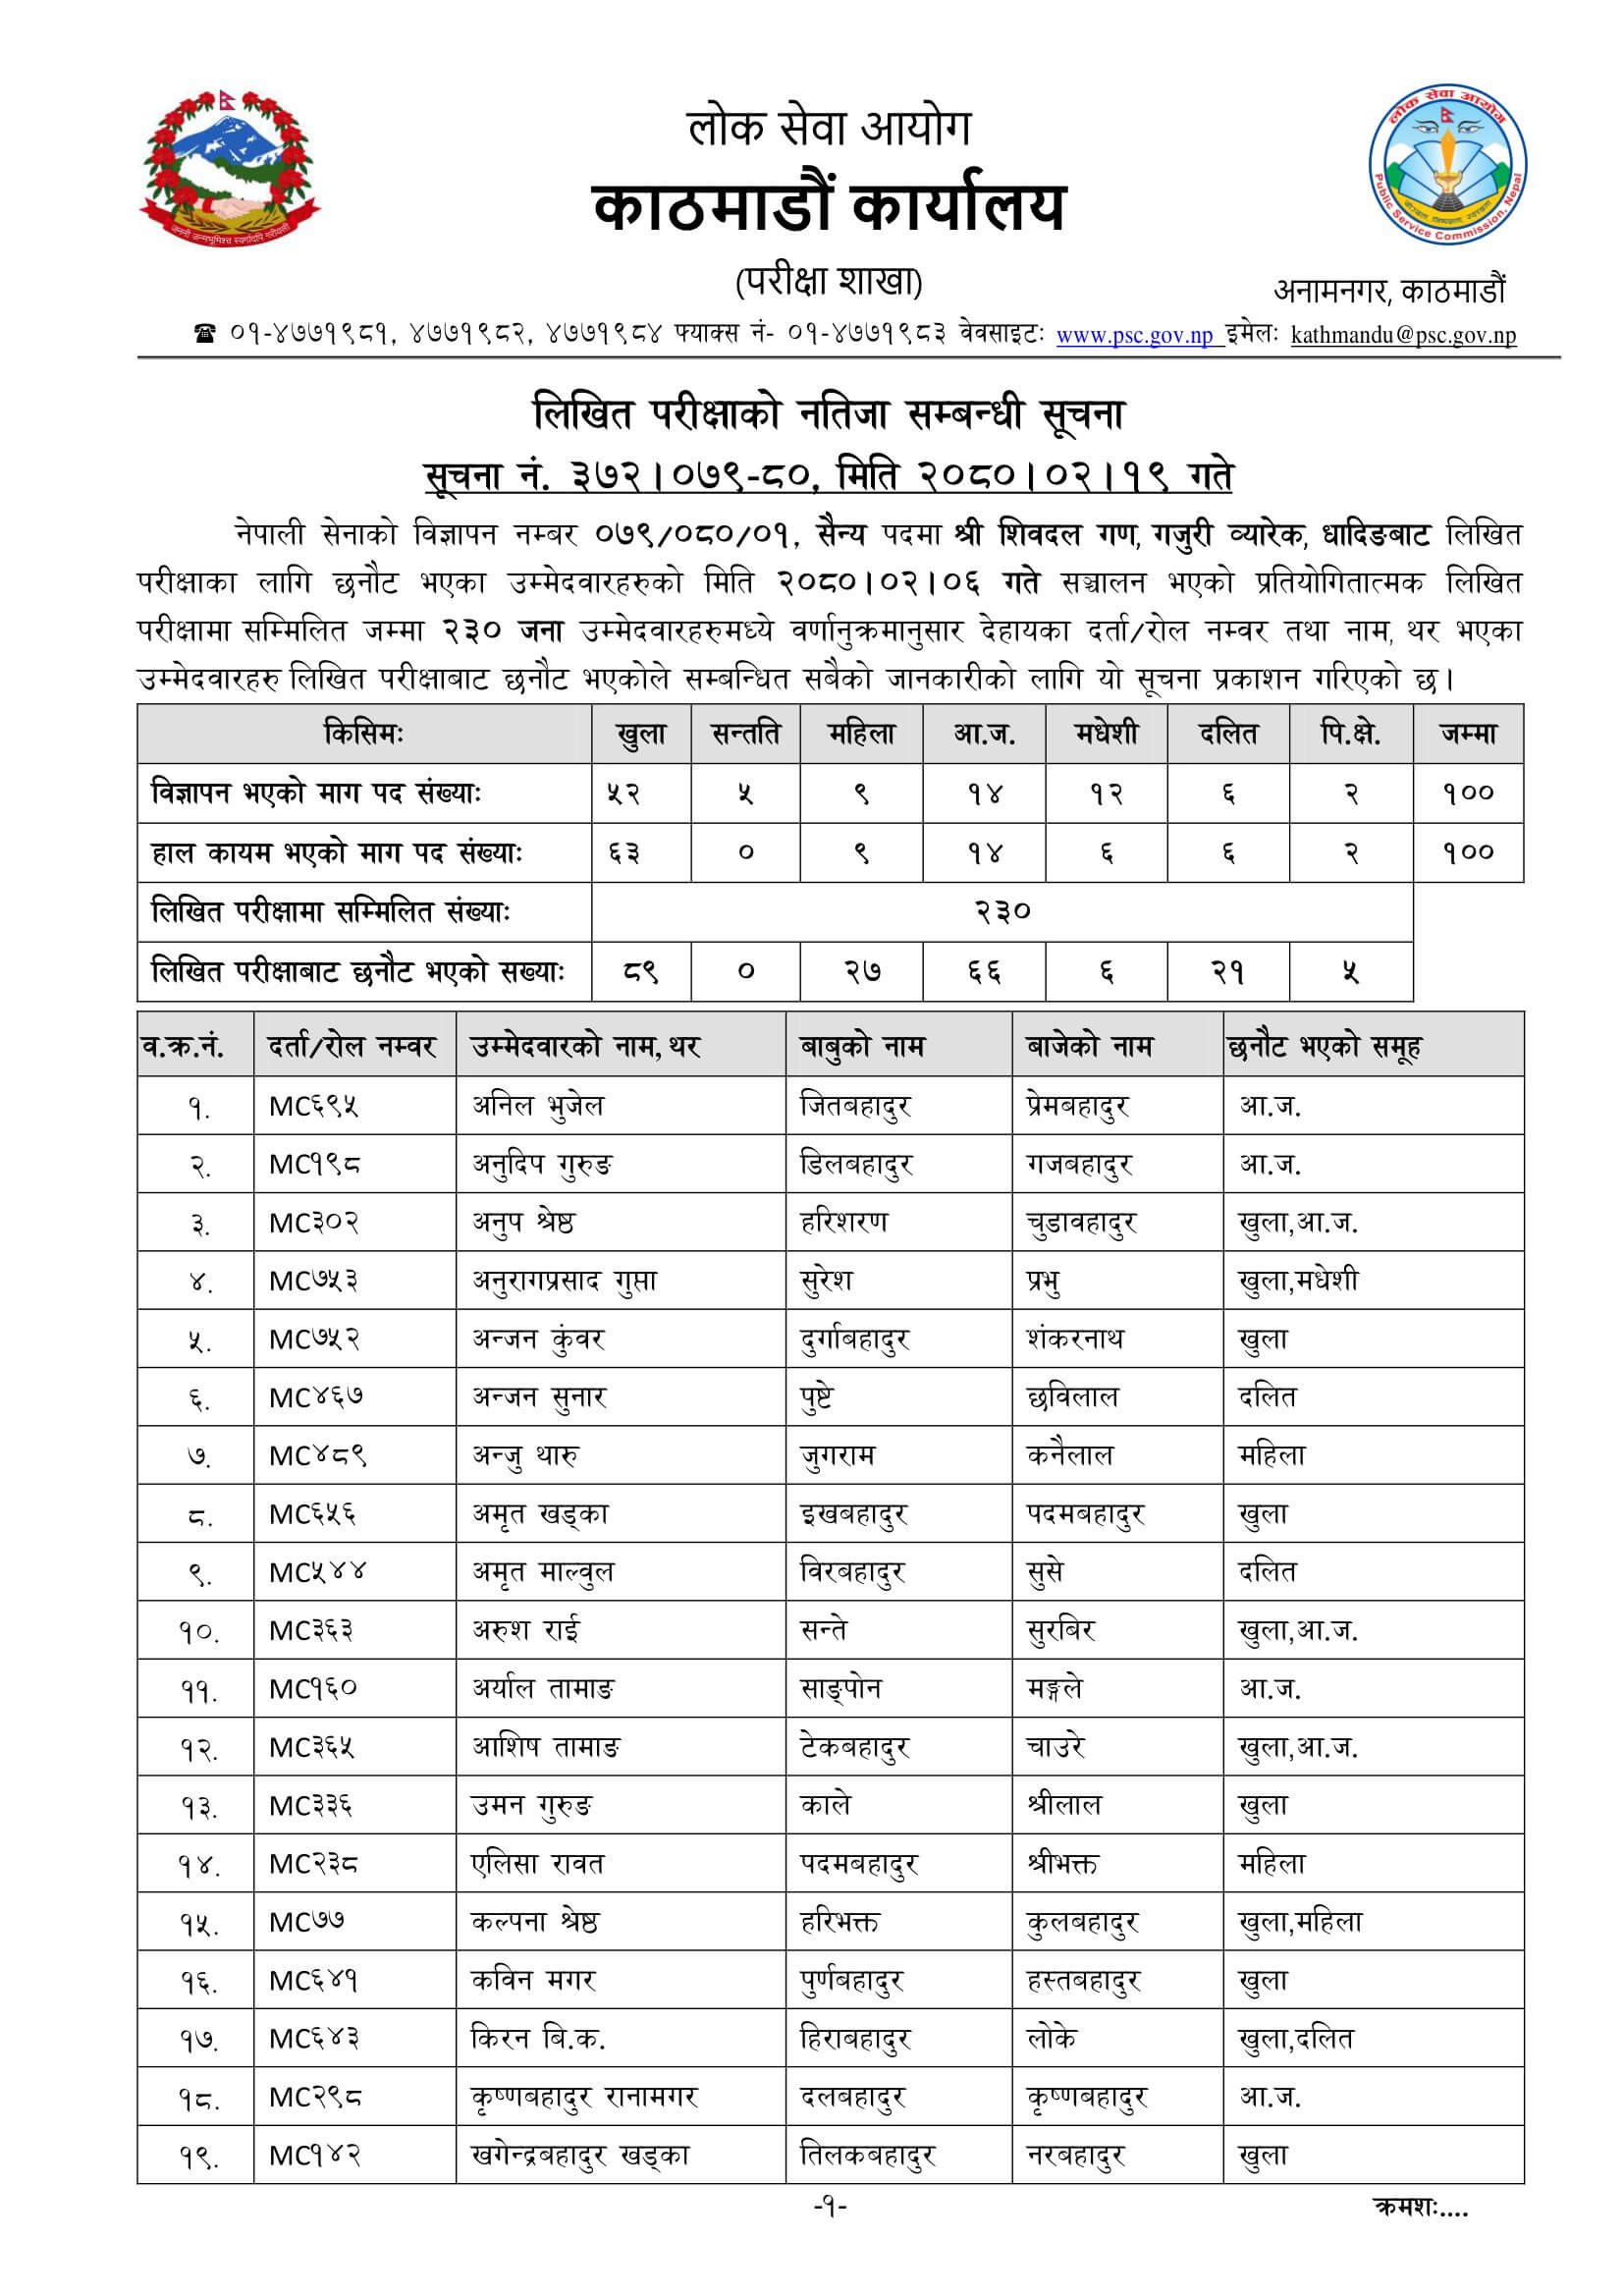 Nepal Army Sainya Written Exam Result Dhading. Nepal Army Sainya Exam Result nepalarmy.gov.np nepalarmy.mil.np nepalarmy.com.np nepalarmy.com